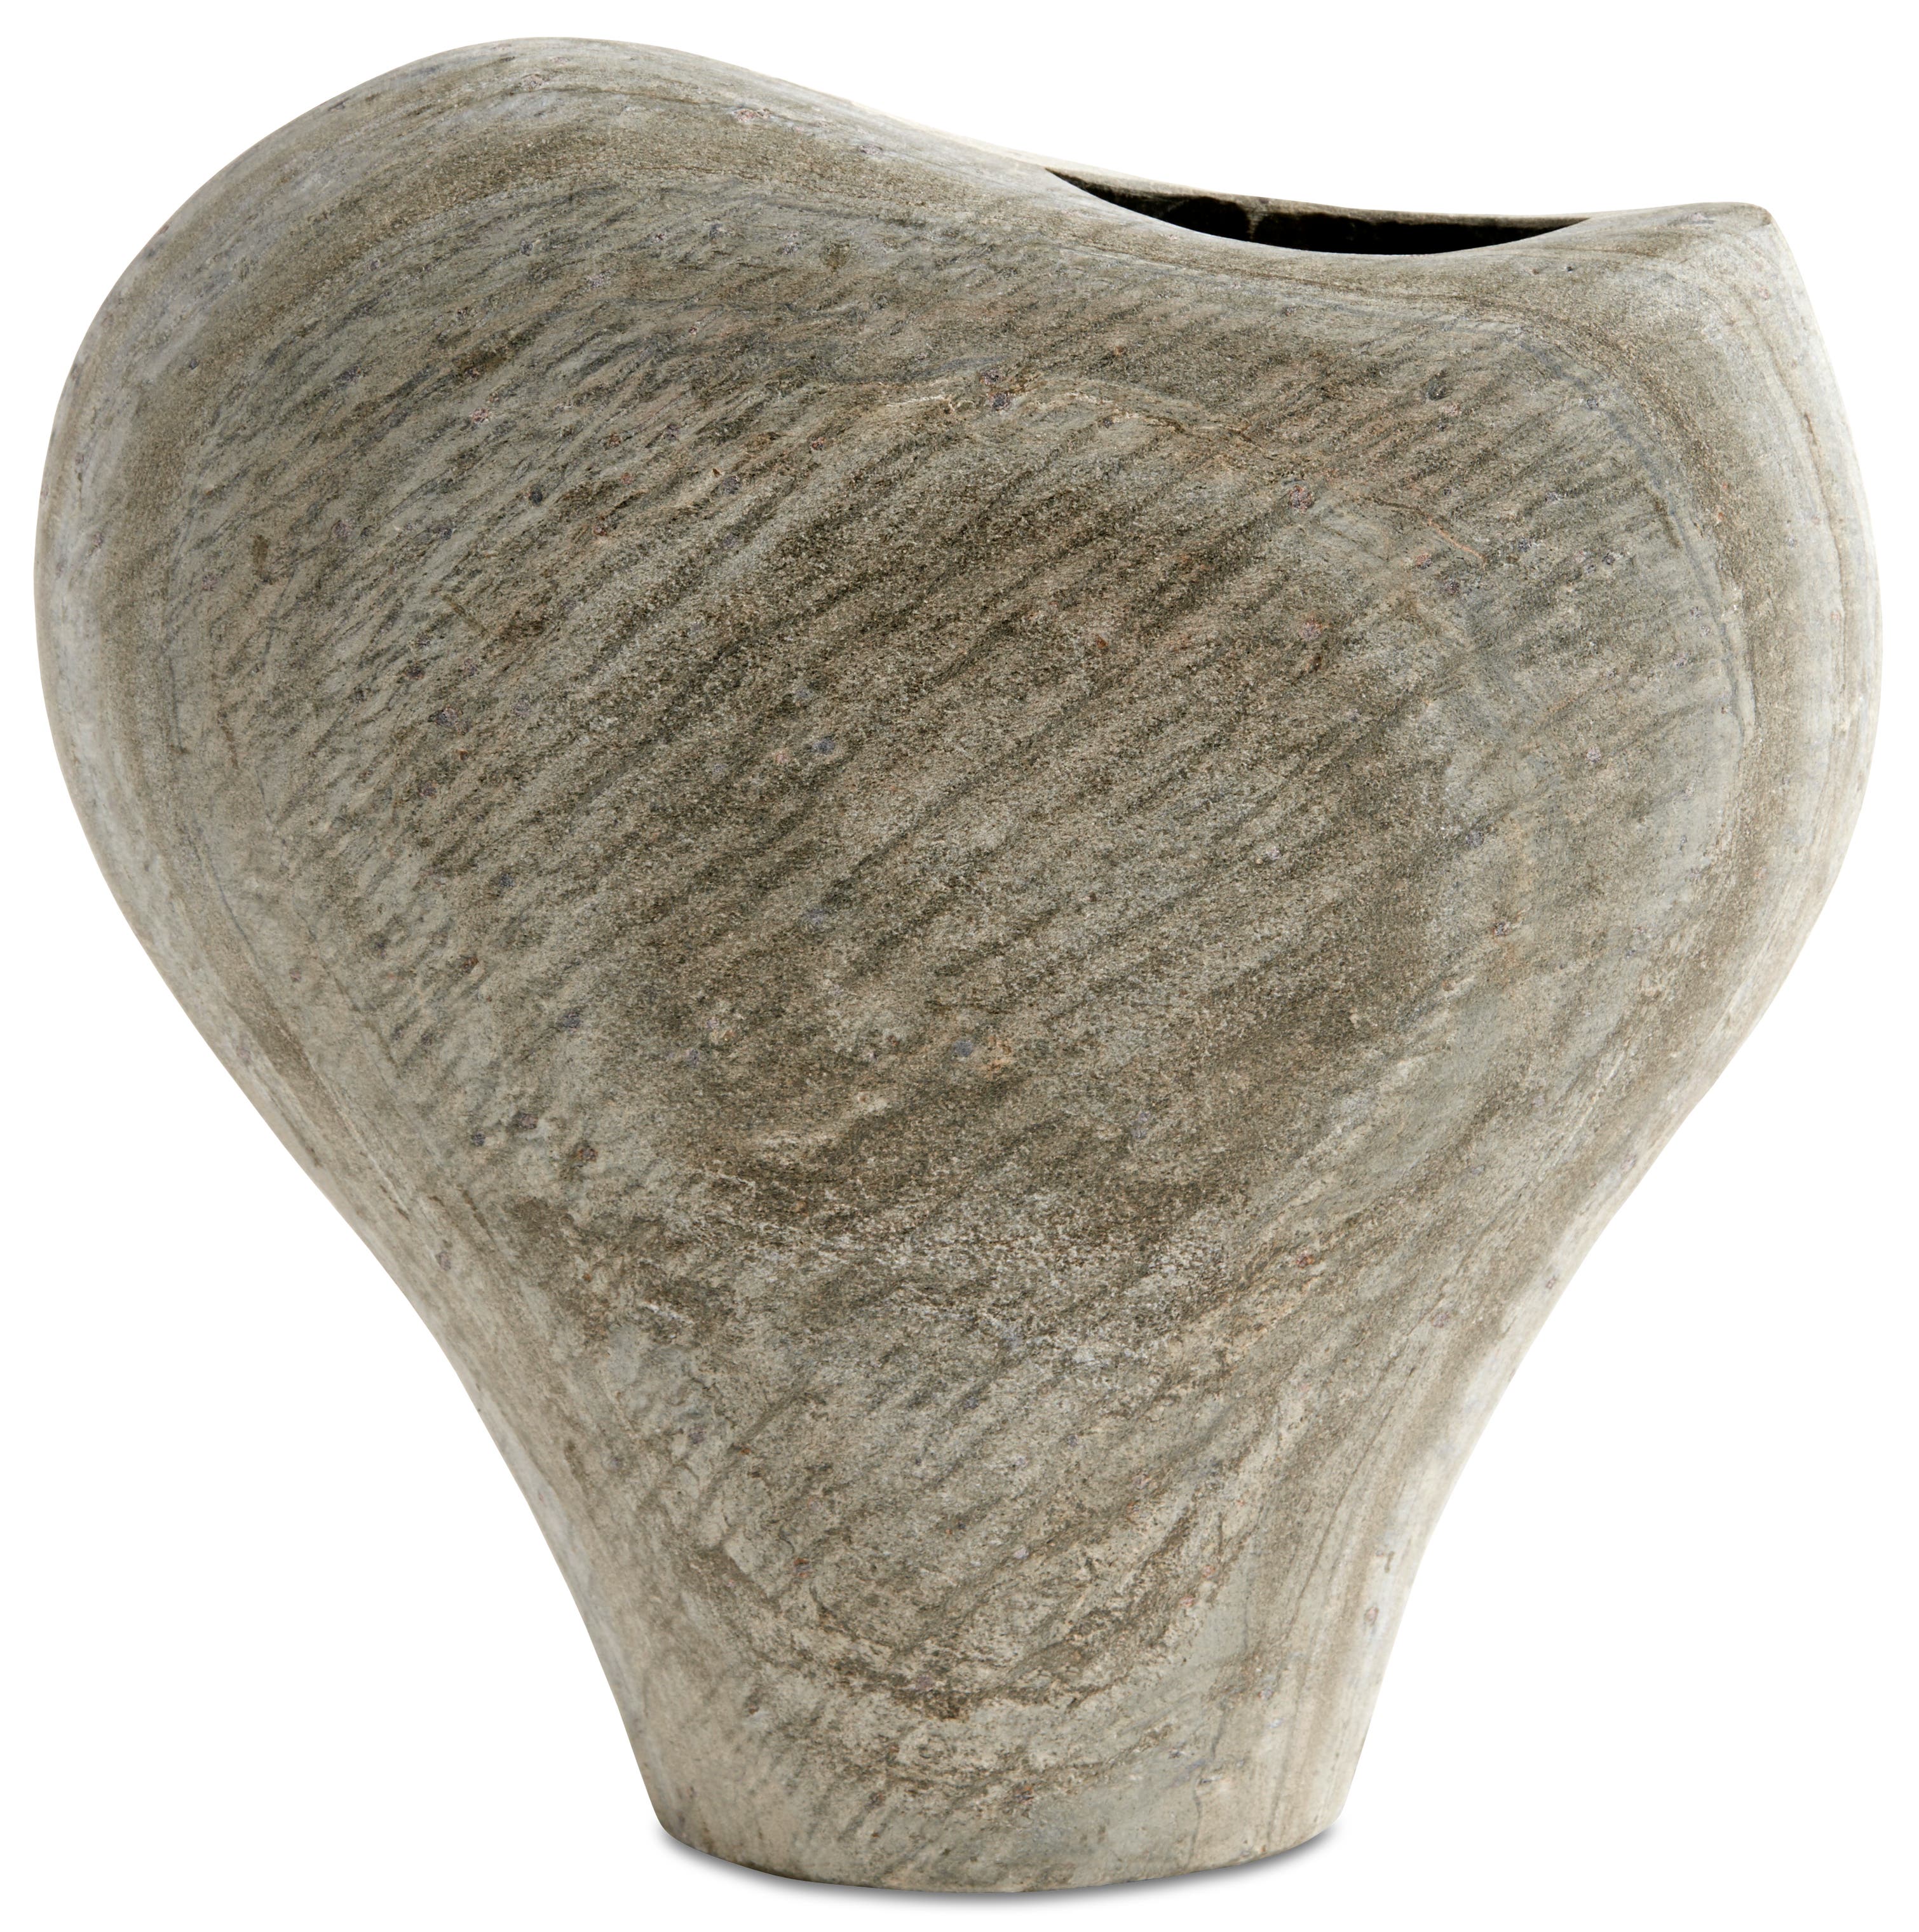 Burly vase